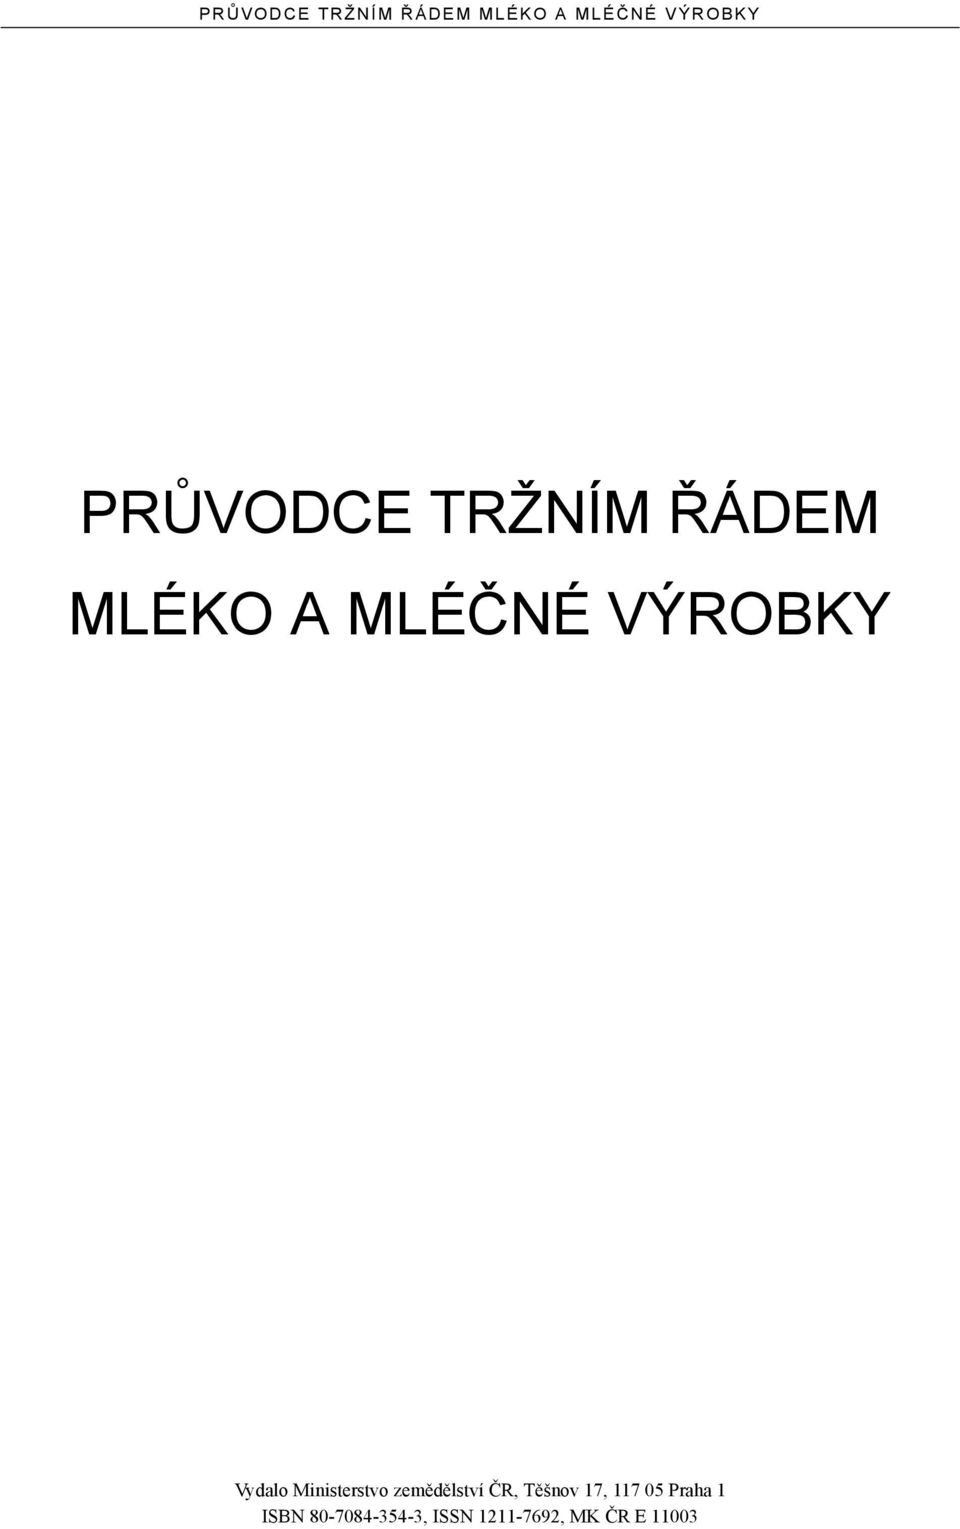 zemědělství ČR, Těšnov 17, 117 05